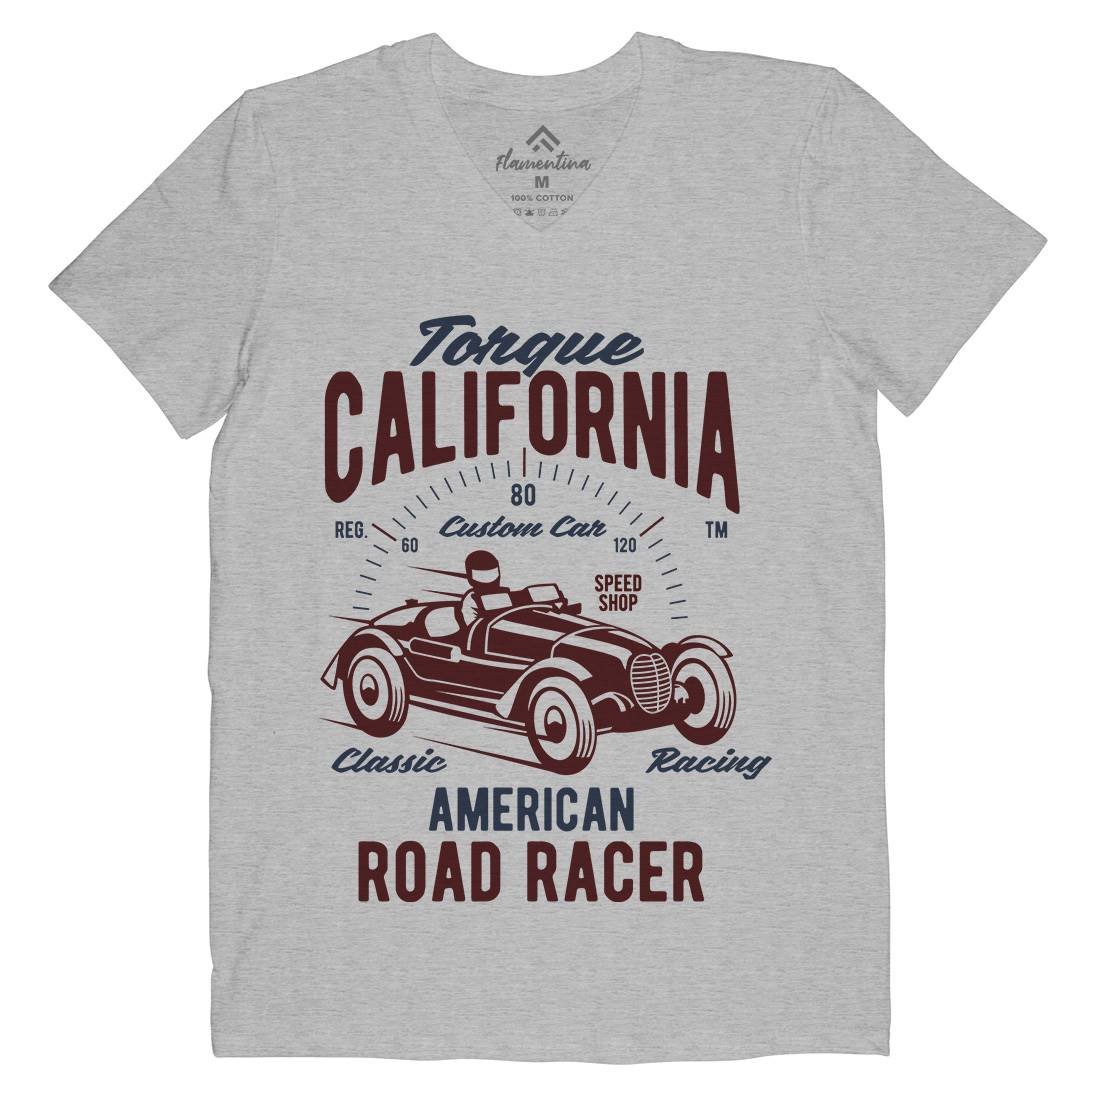 Torque California Mens V-Neck T-Shirt Cars B468